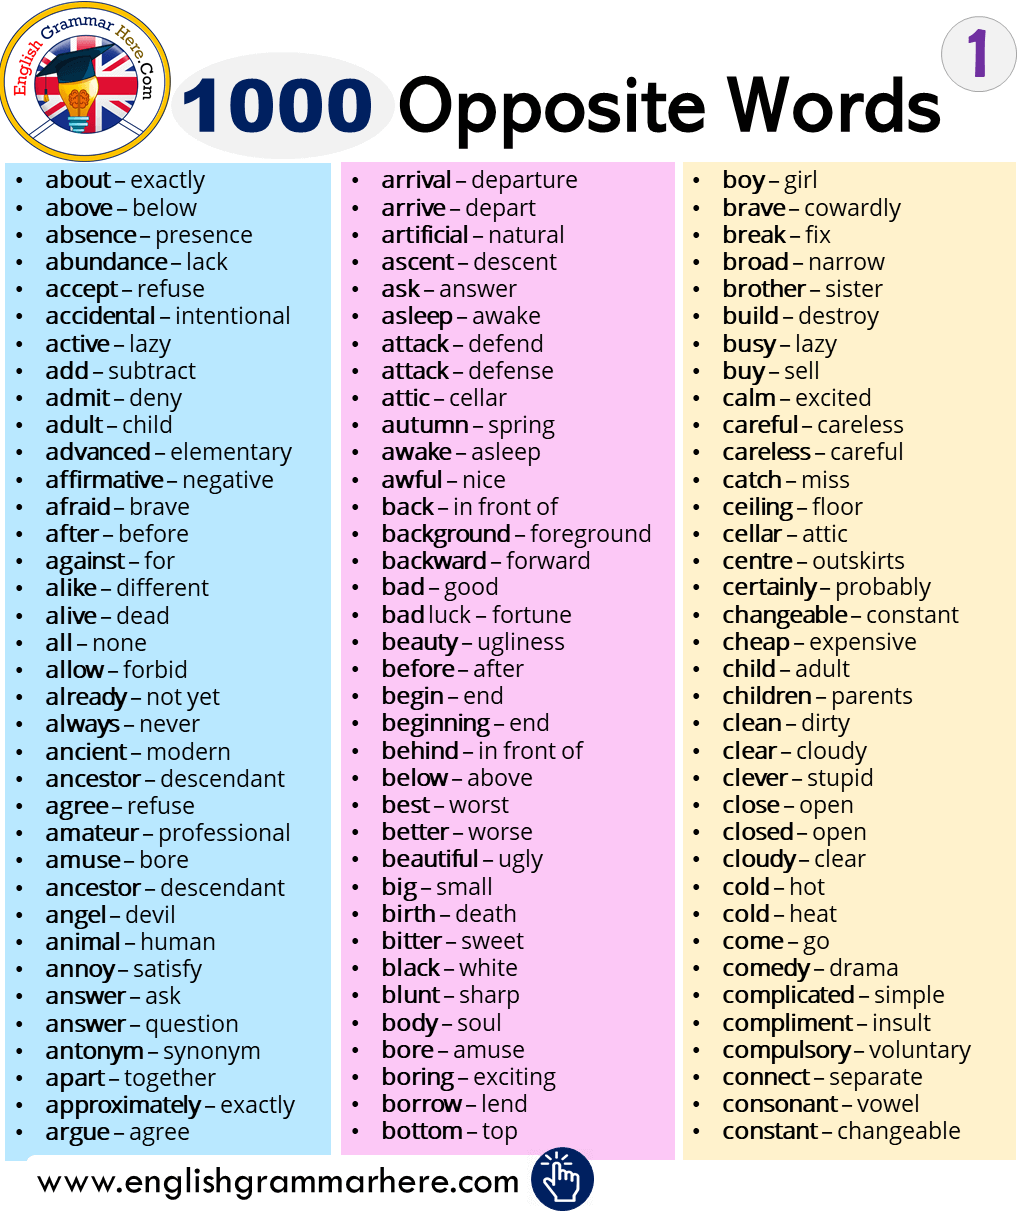 1000 Opposite / Antonym Words List in English